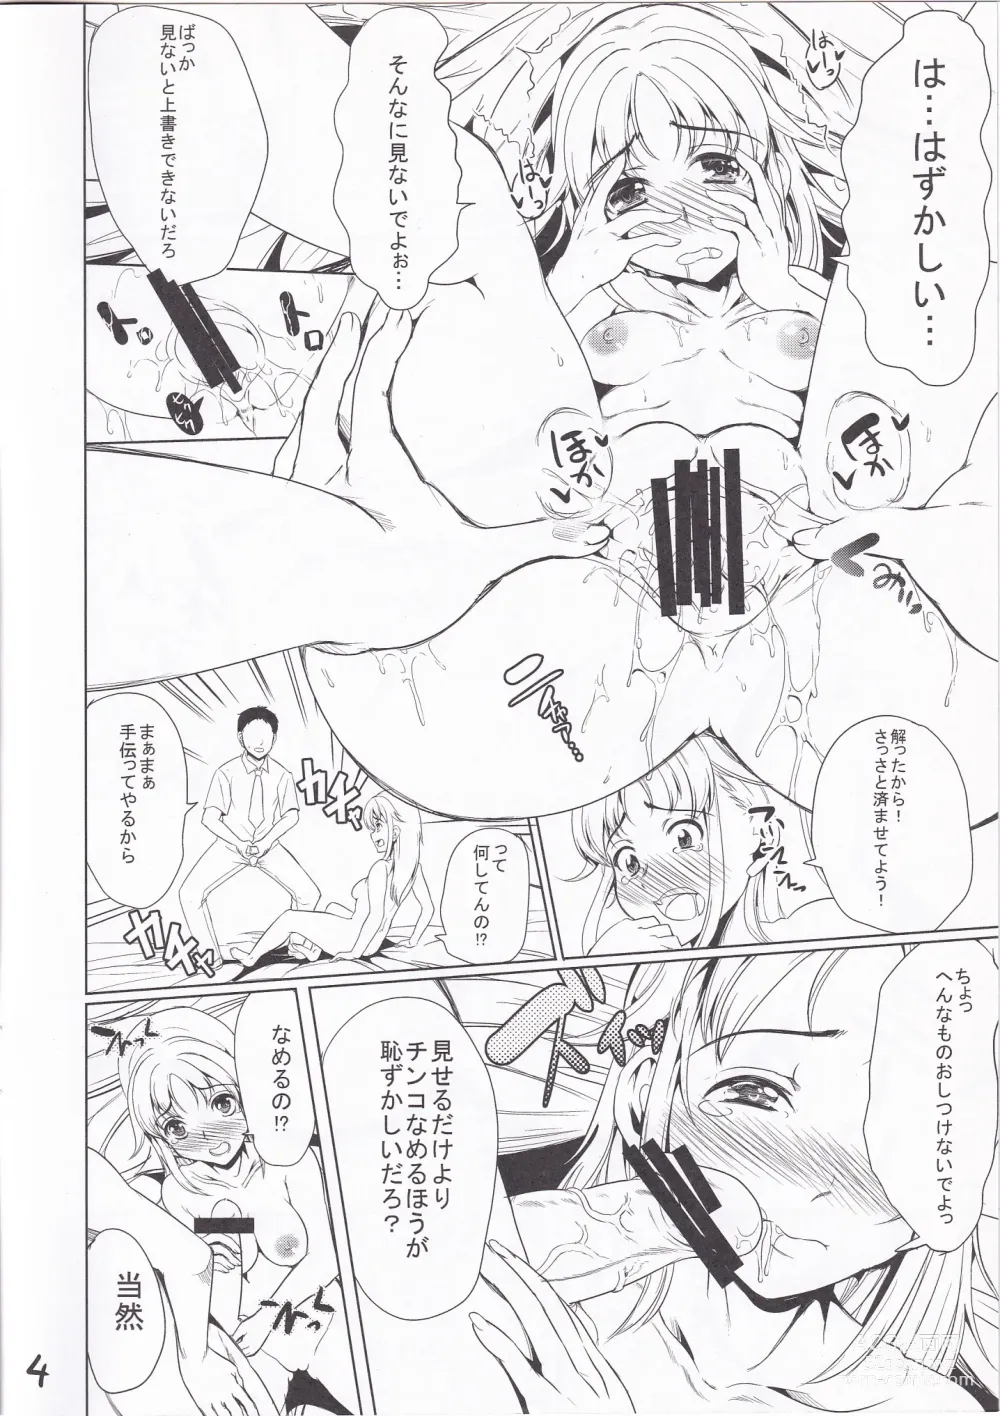 Page 3 of doujinshi Shibattari Okashi Tari